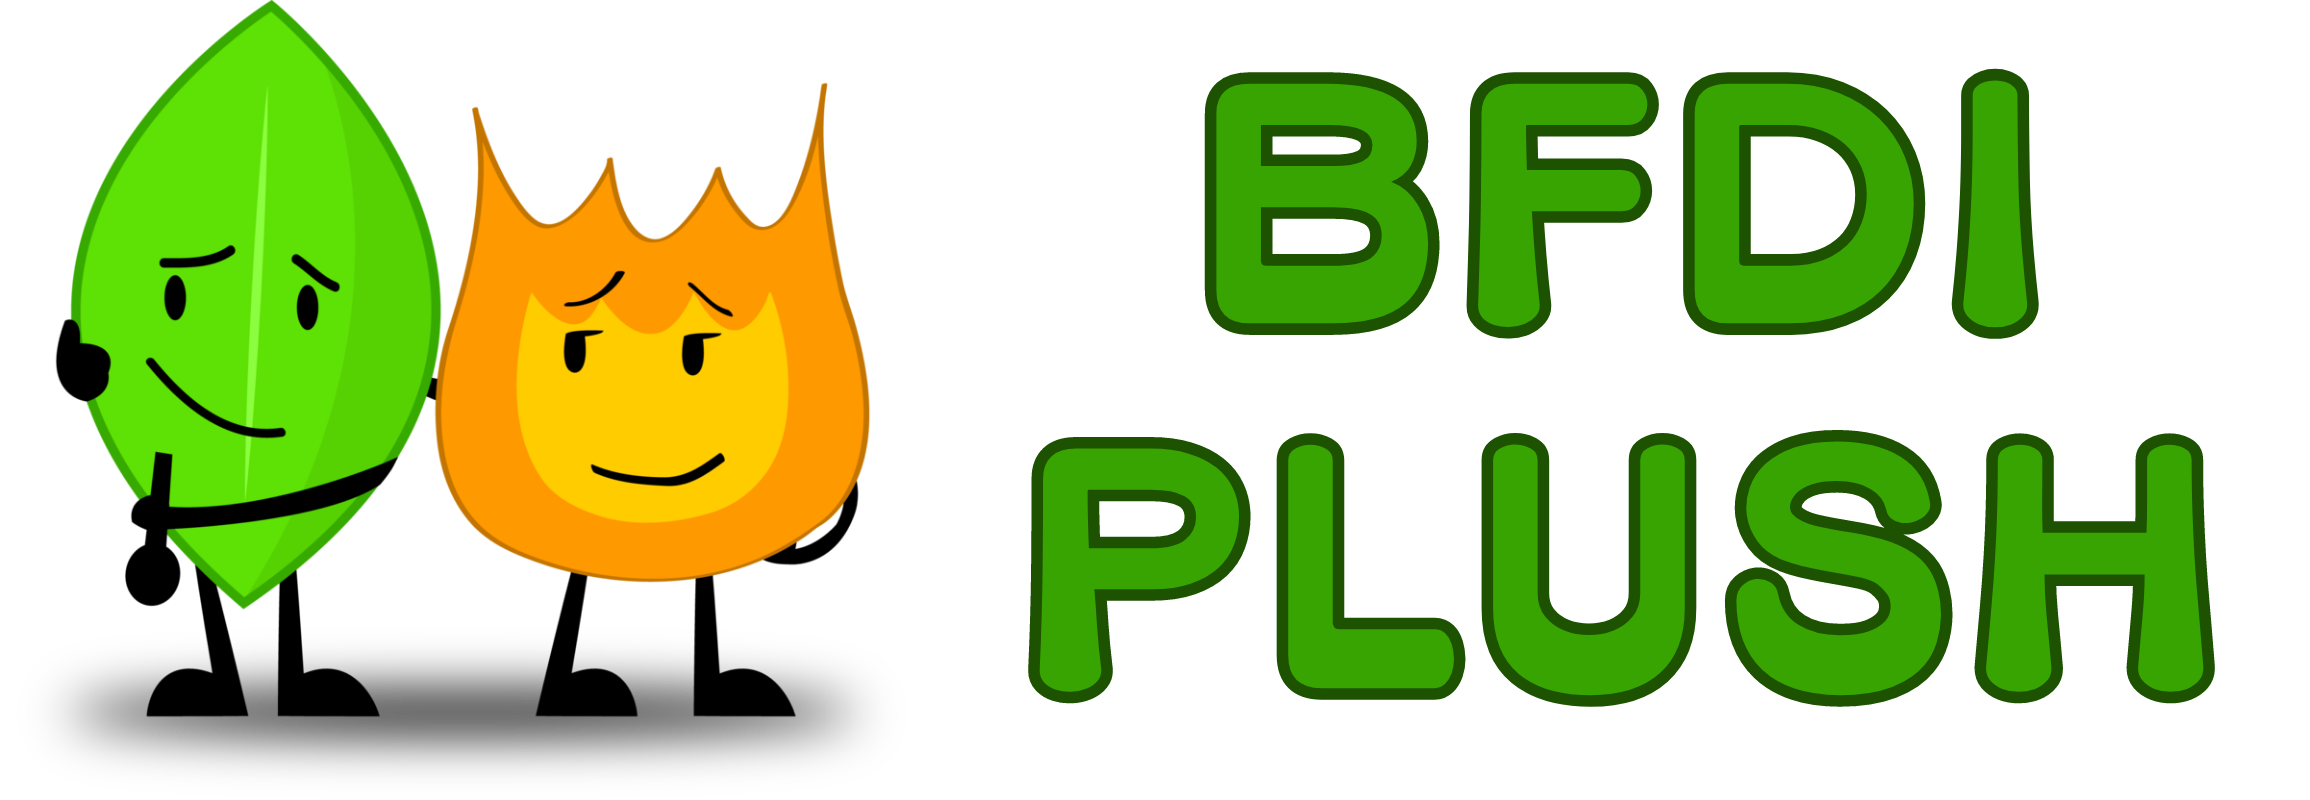 bfdi plush logo 1 - BFDI Plush